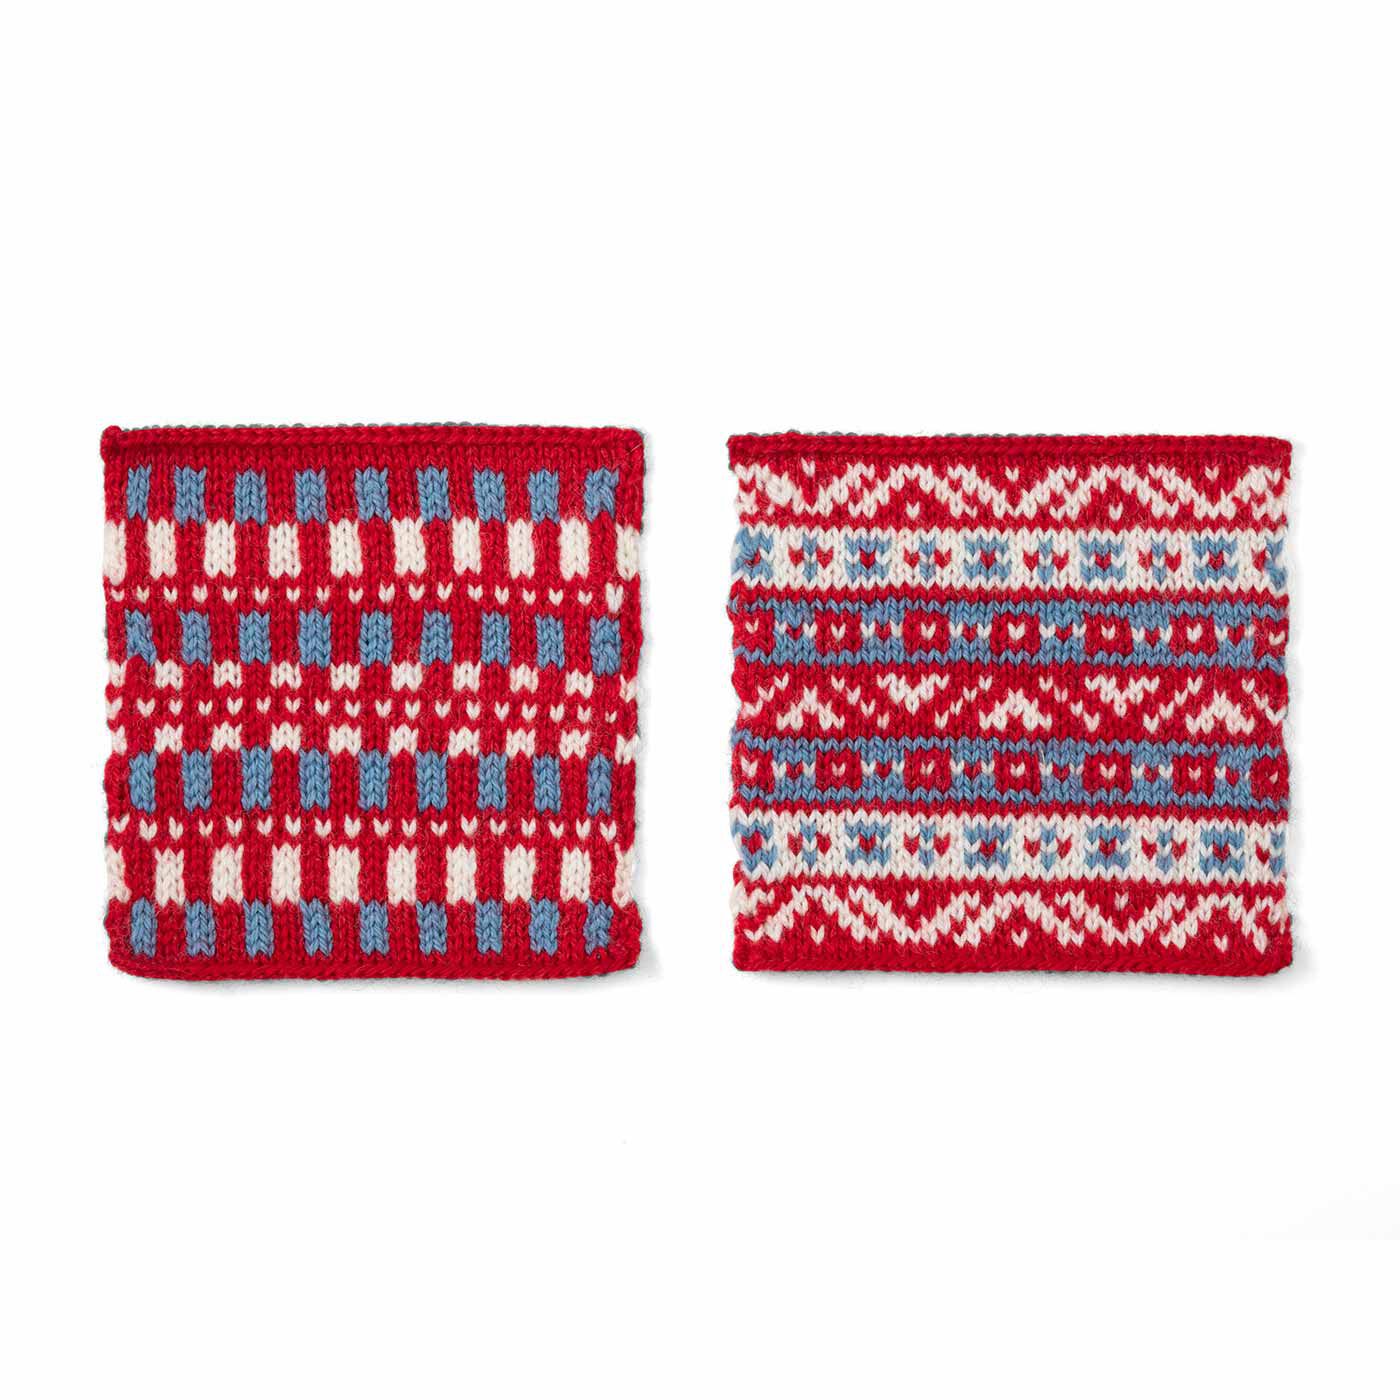 クチュリエ|自然からの贈りもの めくるめく北欧模様を楽しむ棒針編みサンプラーの会|織柄風パターン